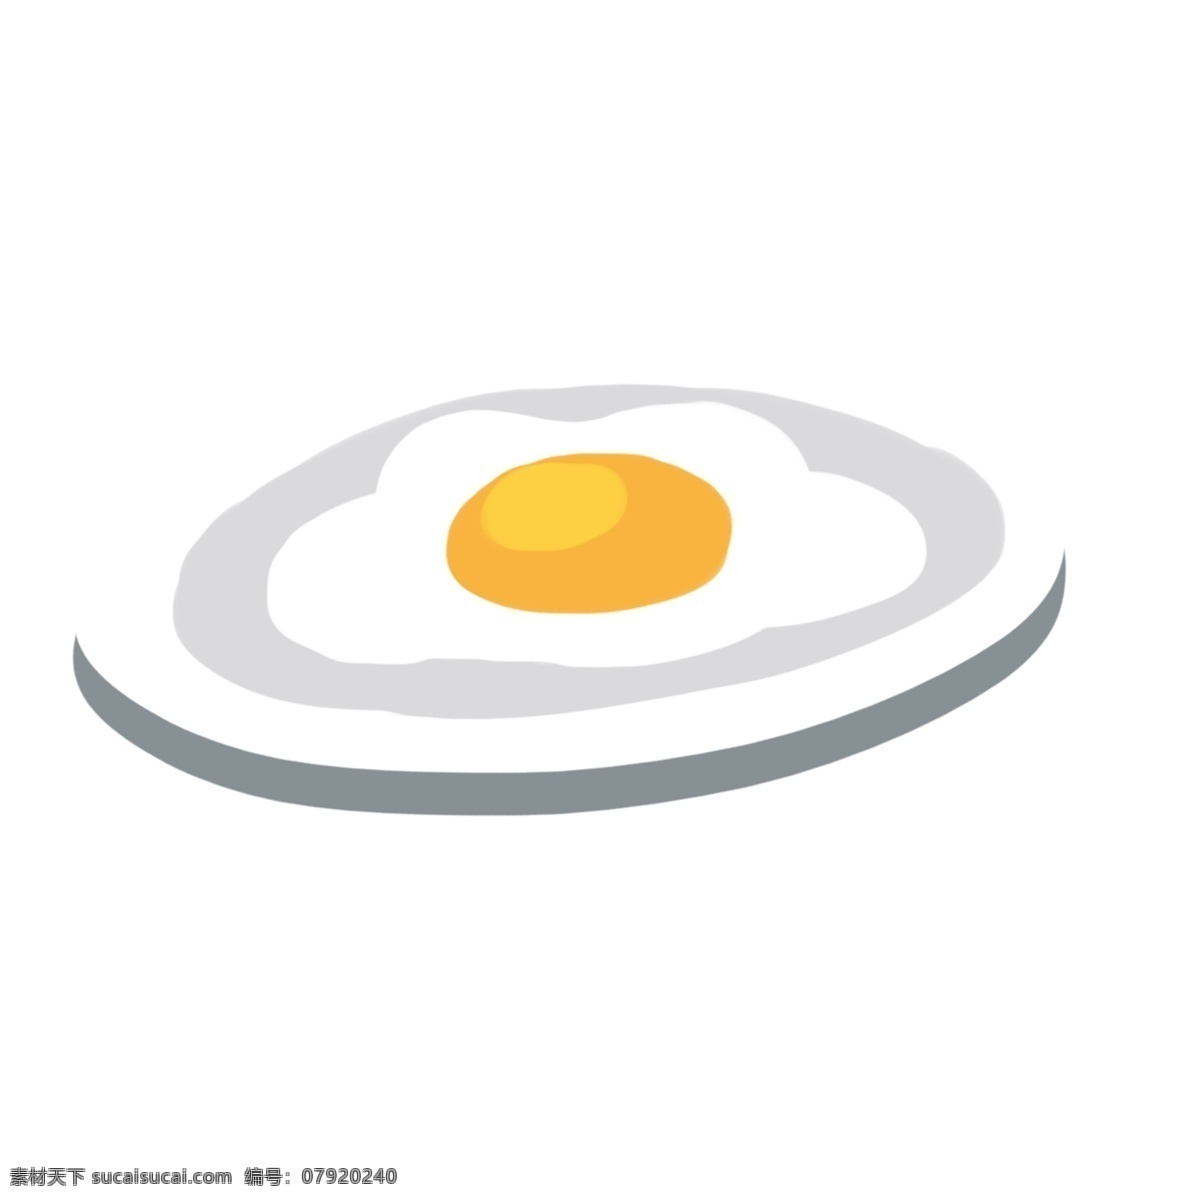 一个 好吃 荷包蛋 免 抠 图 佳肴 美食 煎蛋 蛋 免抠图 好吃的荷包蛋 菜 鸡蛋 一个蛋